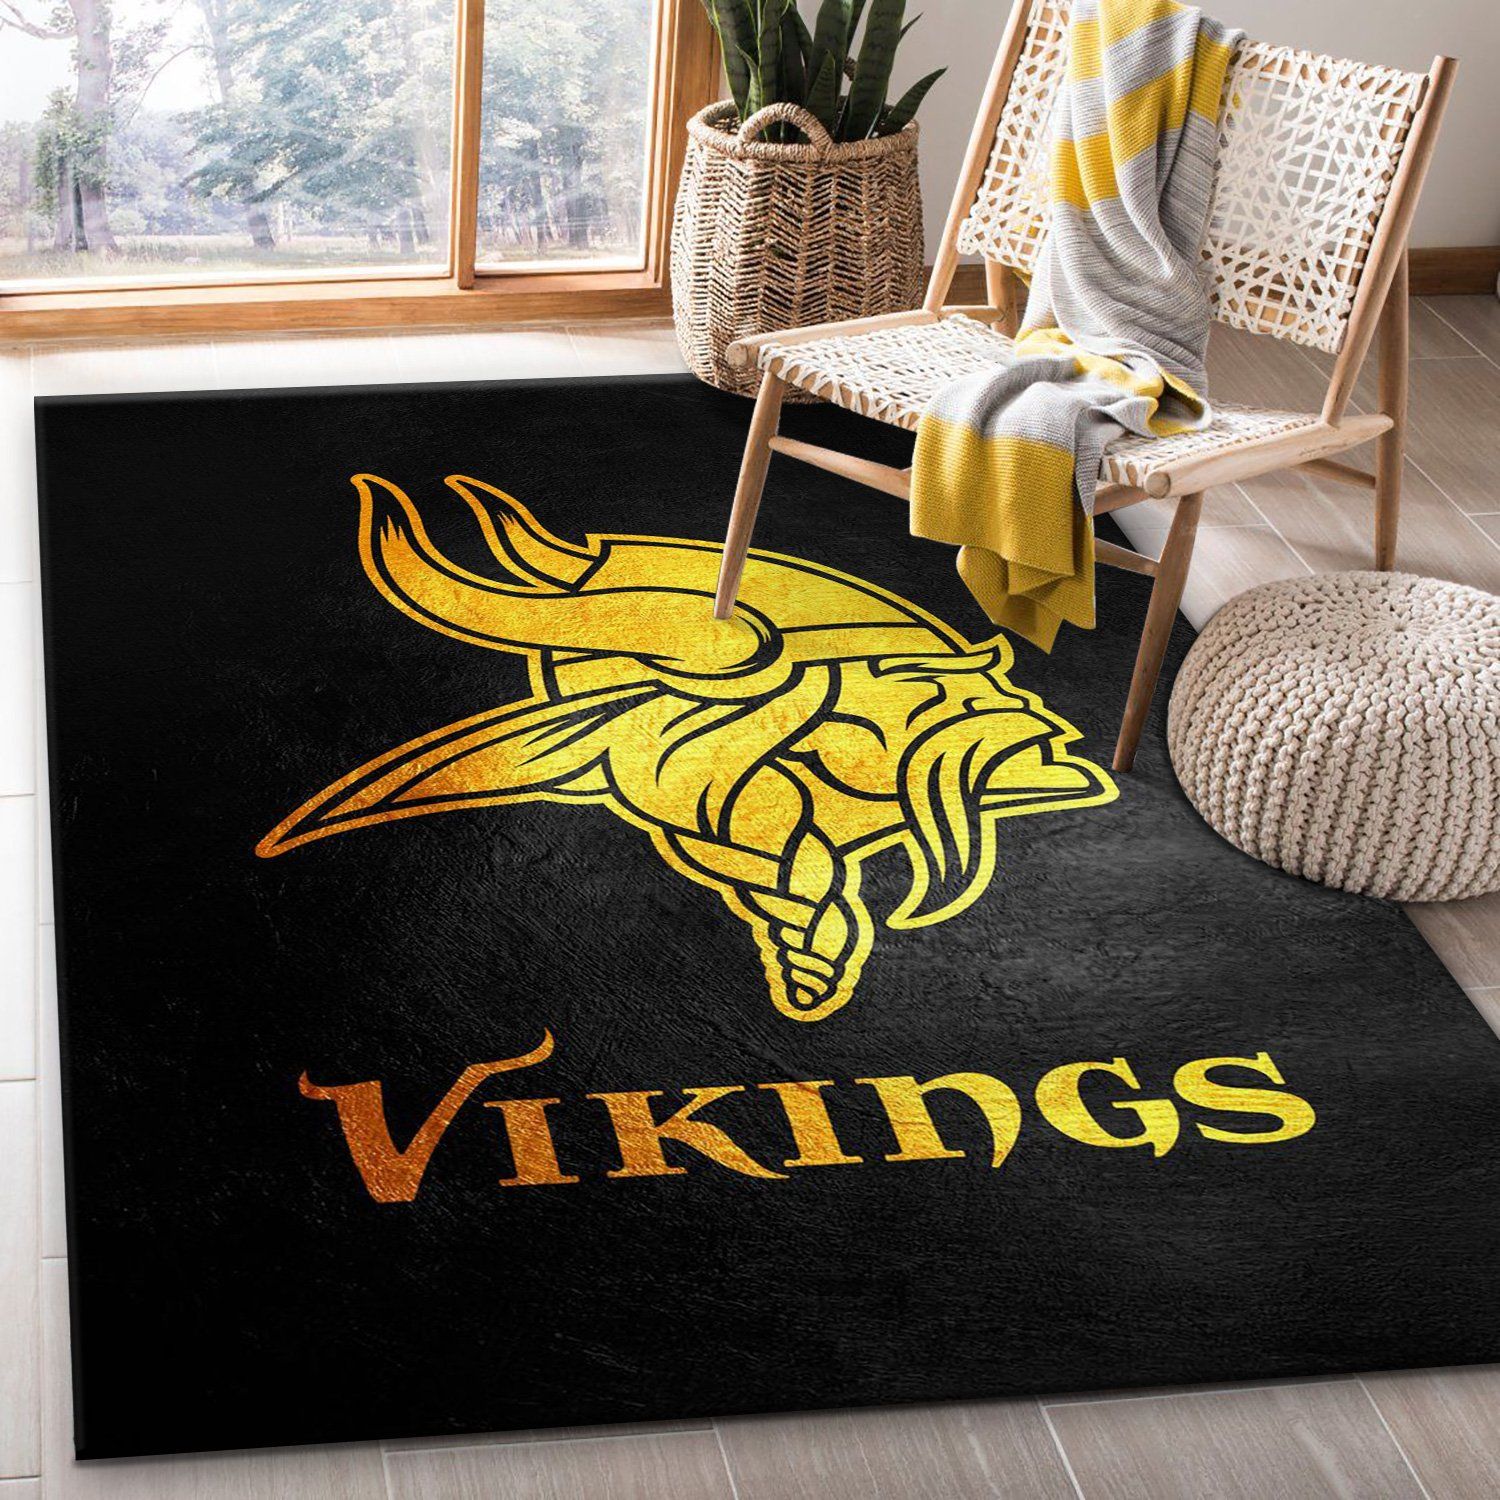  Minnesota  Vikings  NFL Area Rug Living  room  and bedroom 